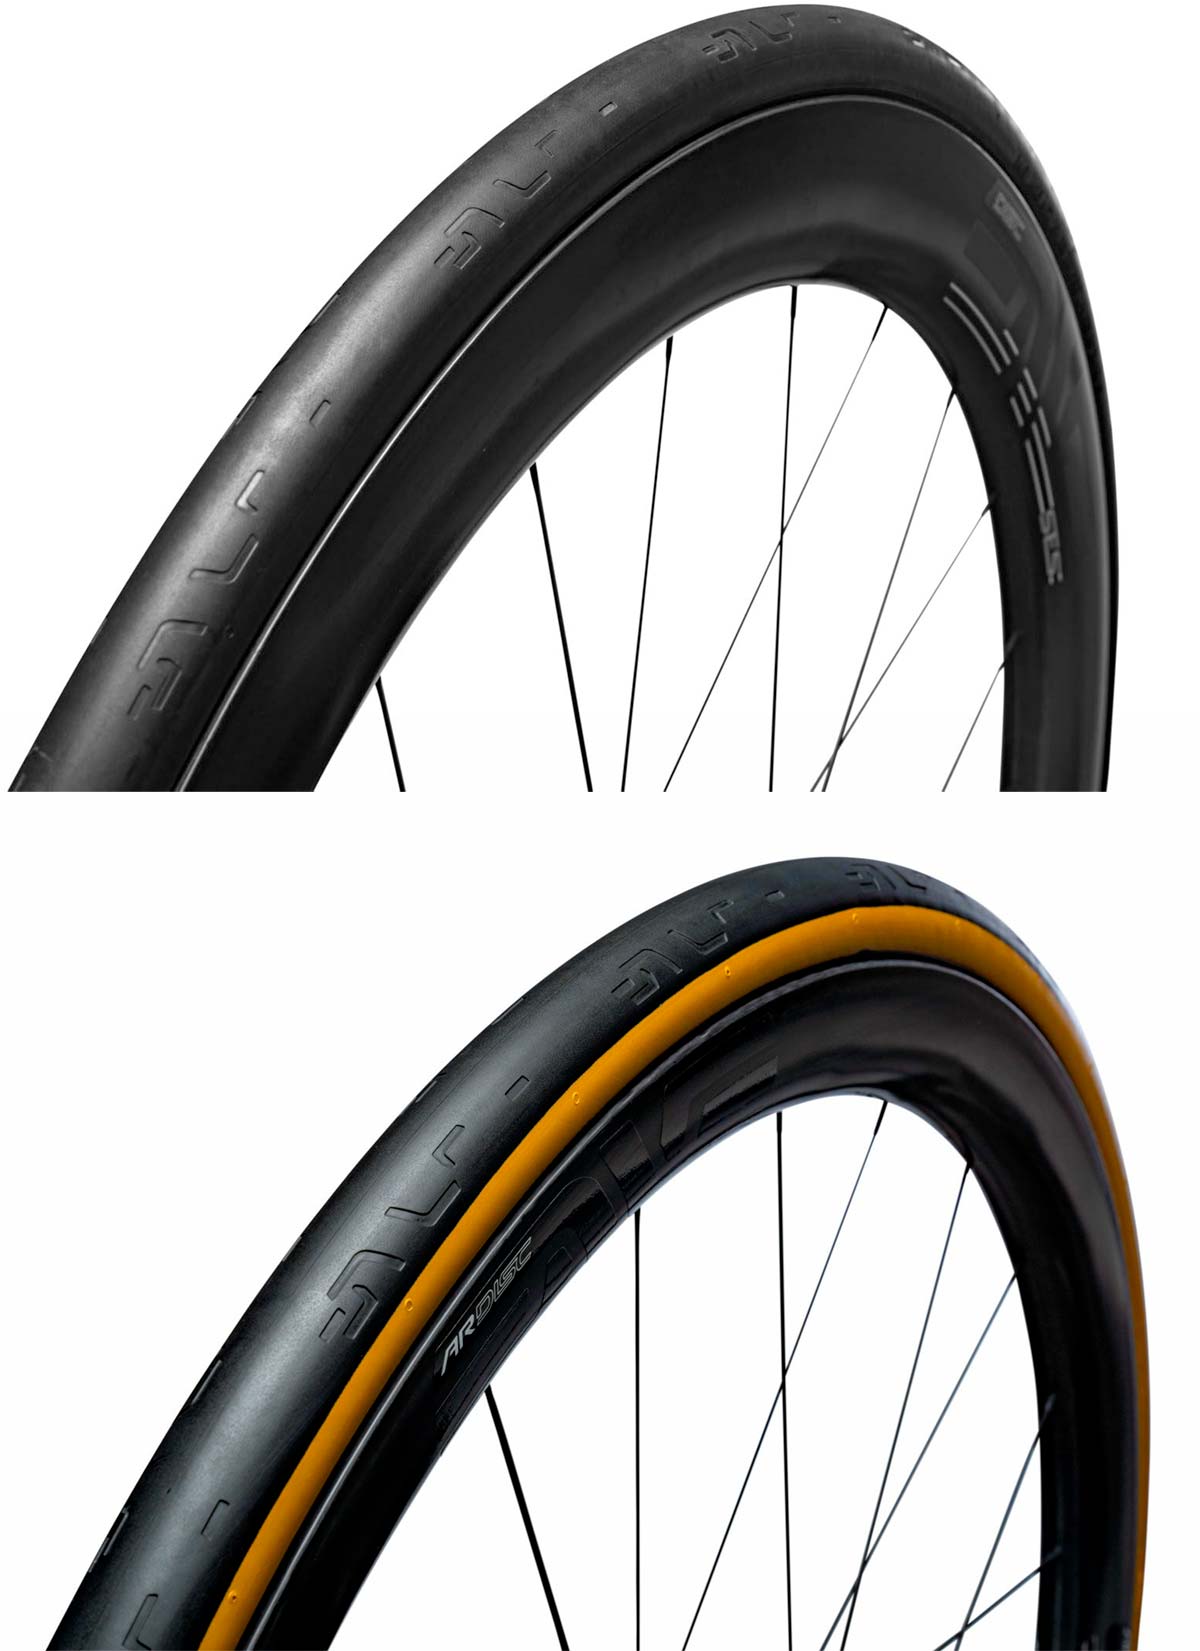 En TodoMountainBike: ENVE se adentra en el segmento de los neumáticos para bicicletas con su gama SES